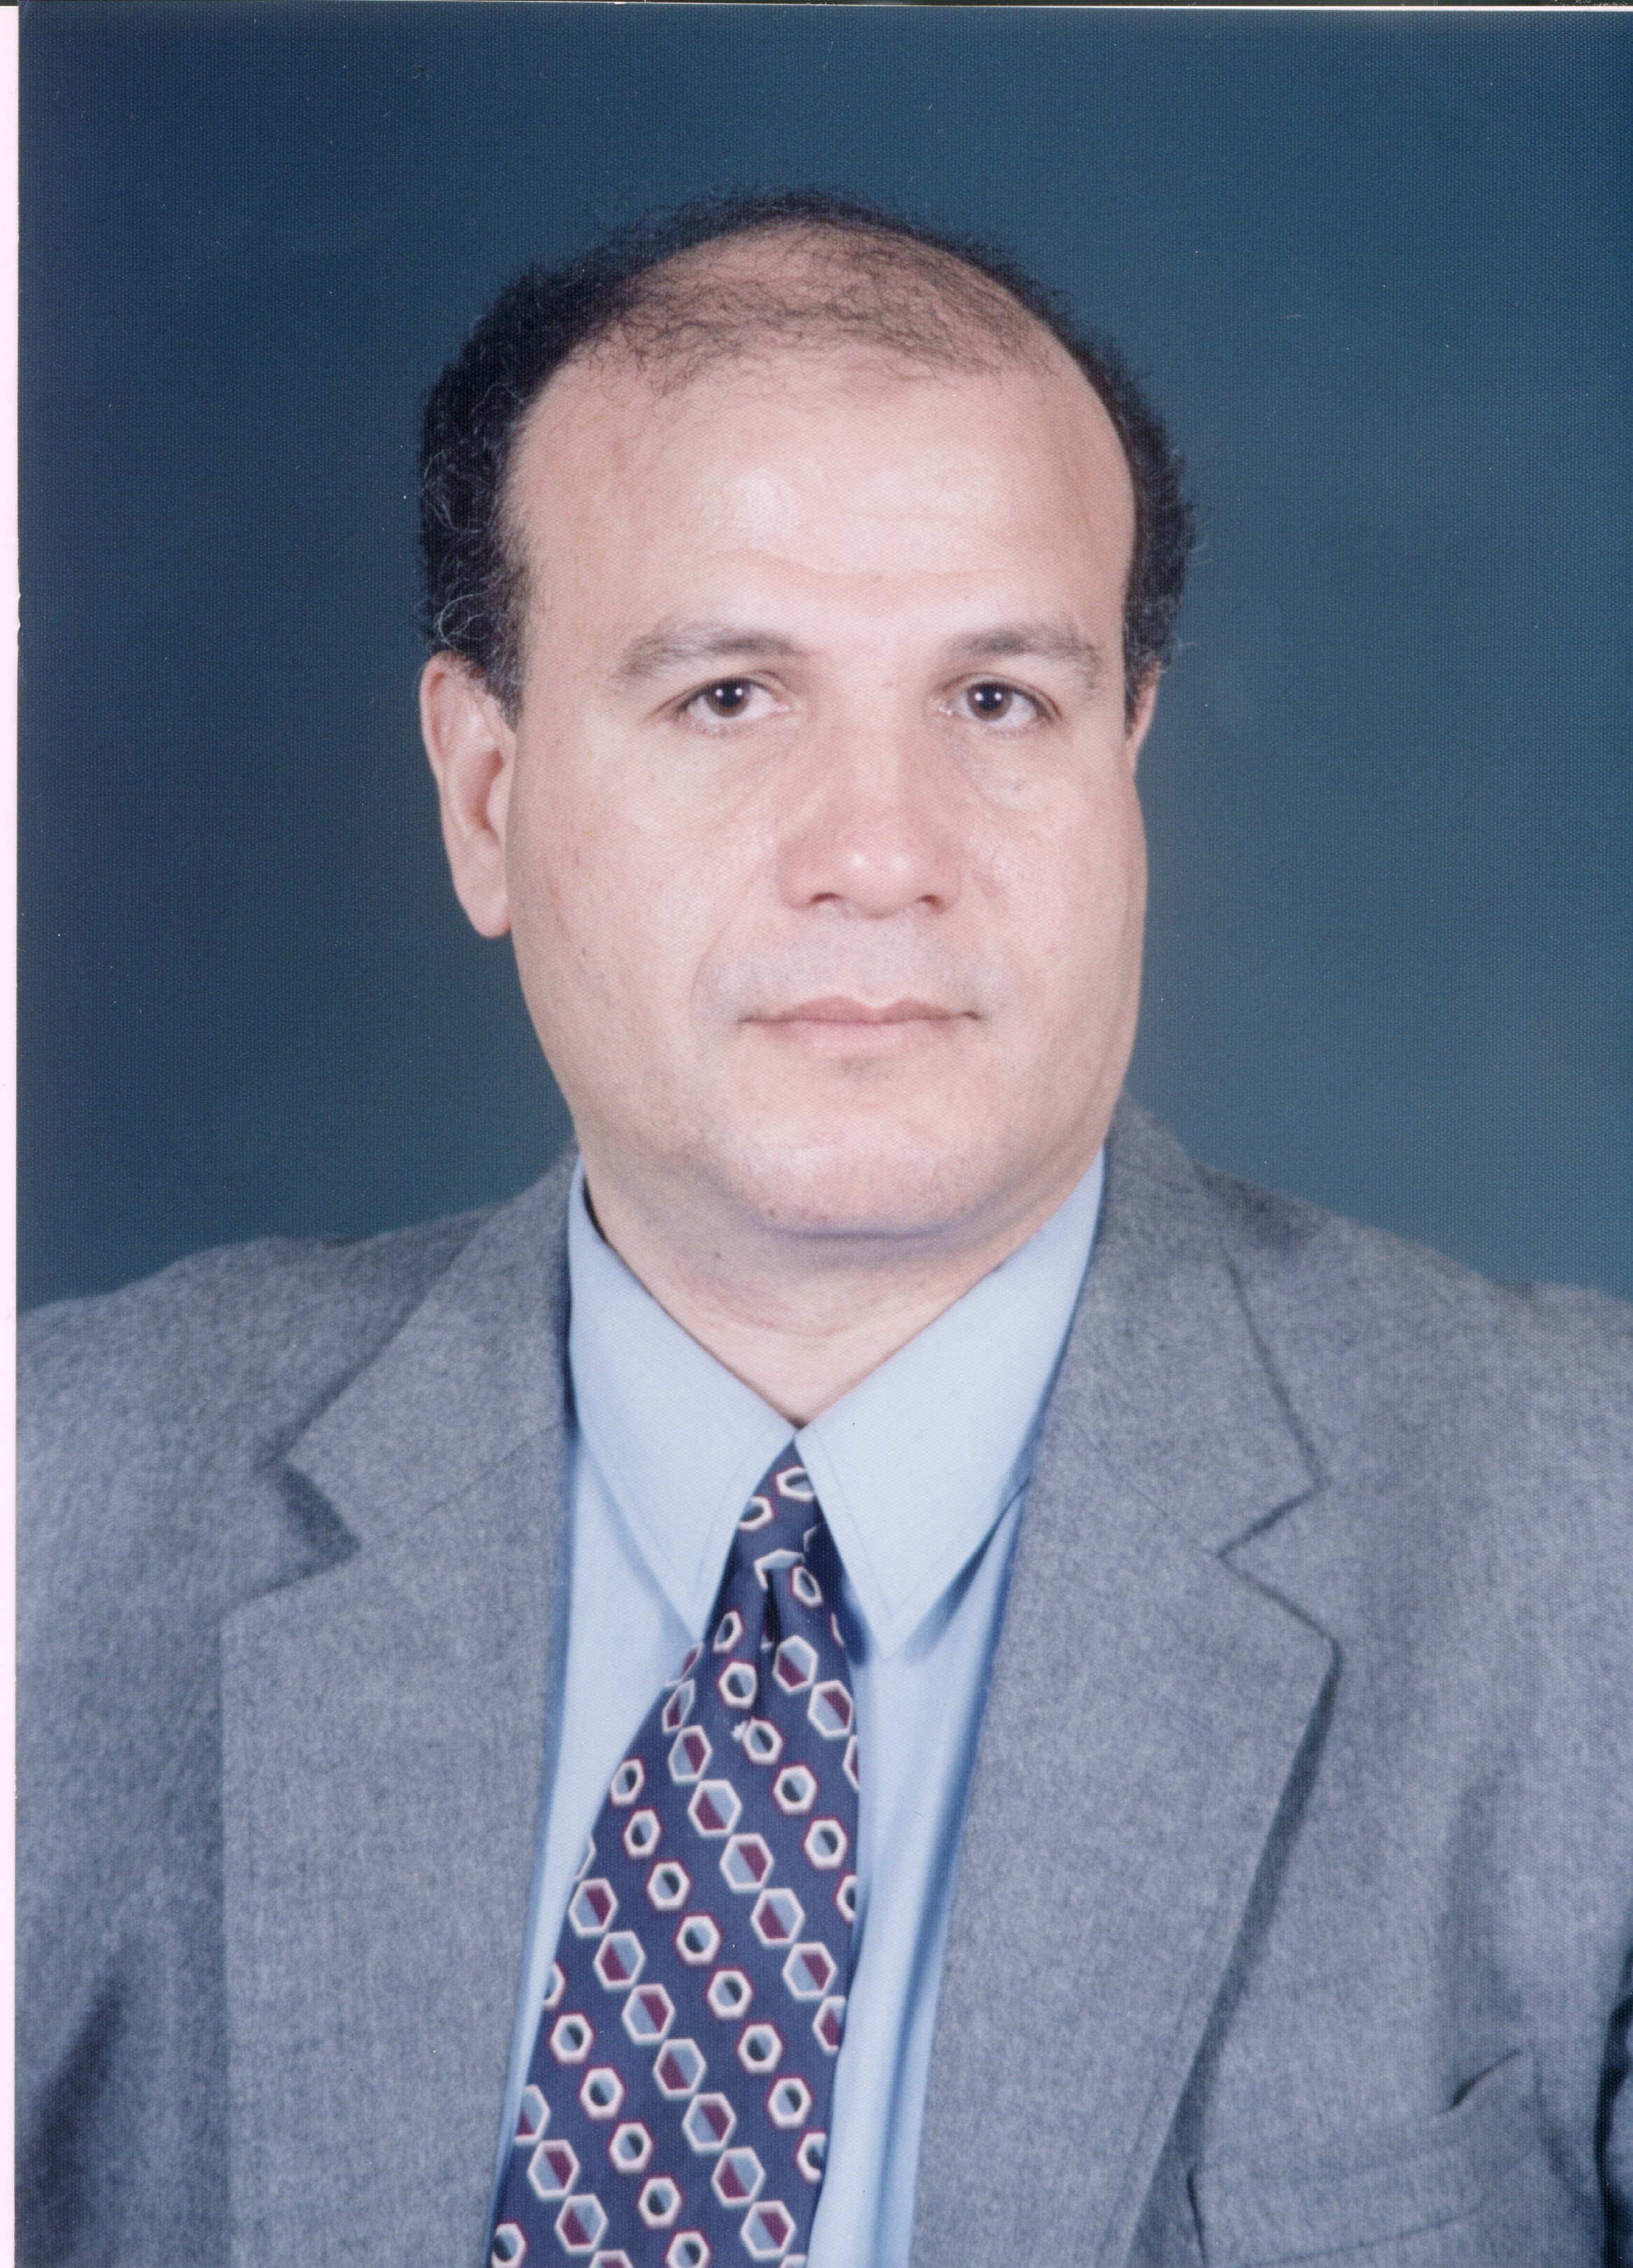 Ahmed Abdel Fattah Mahmoud Ahmed